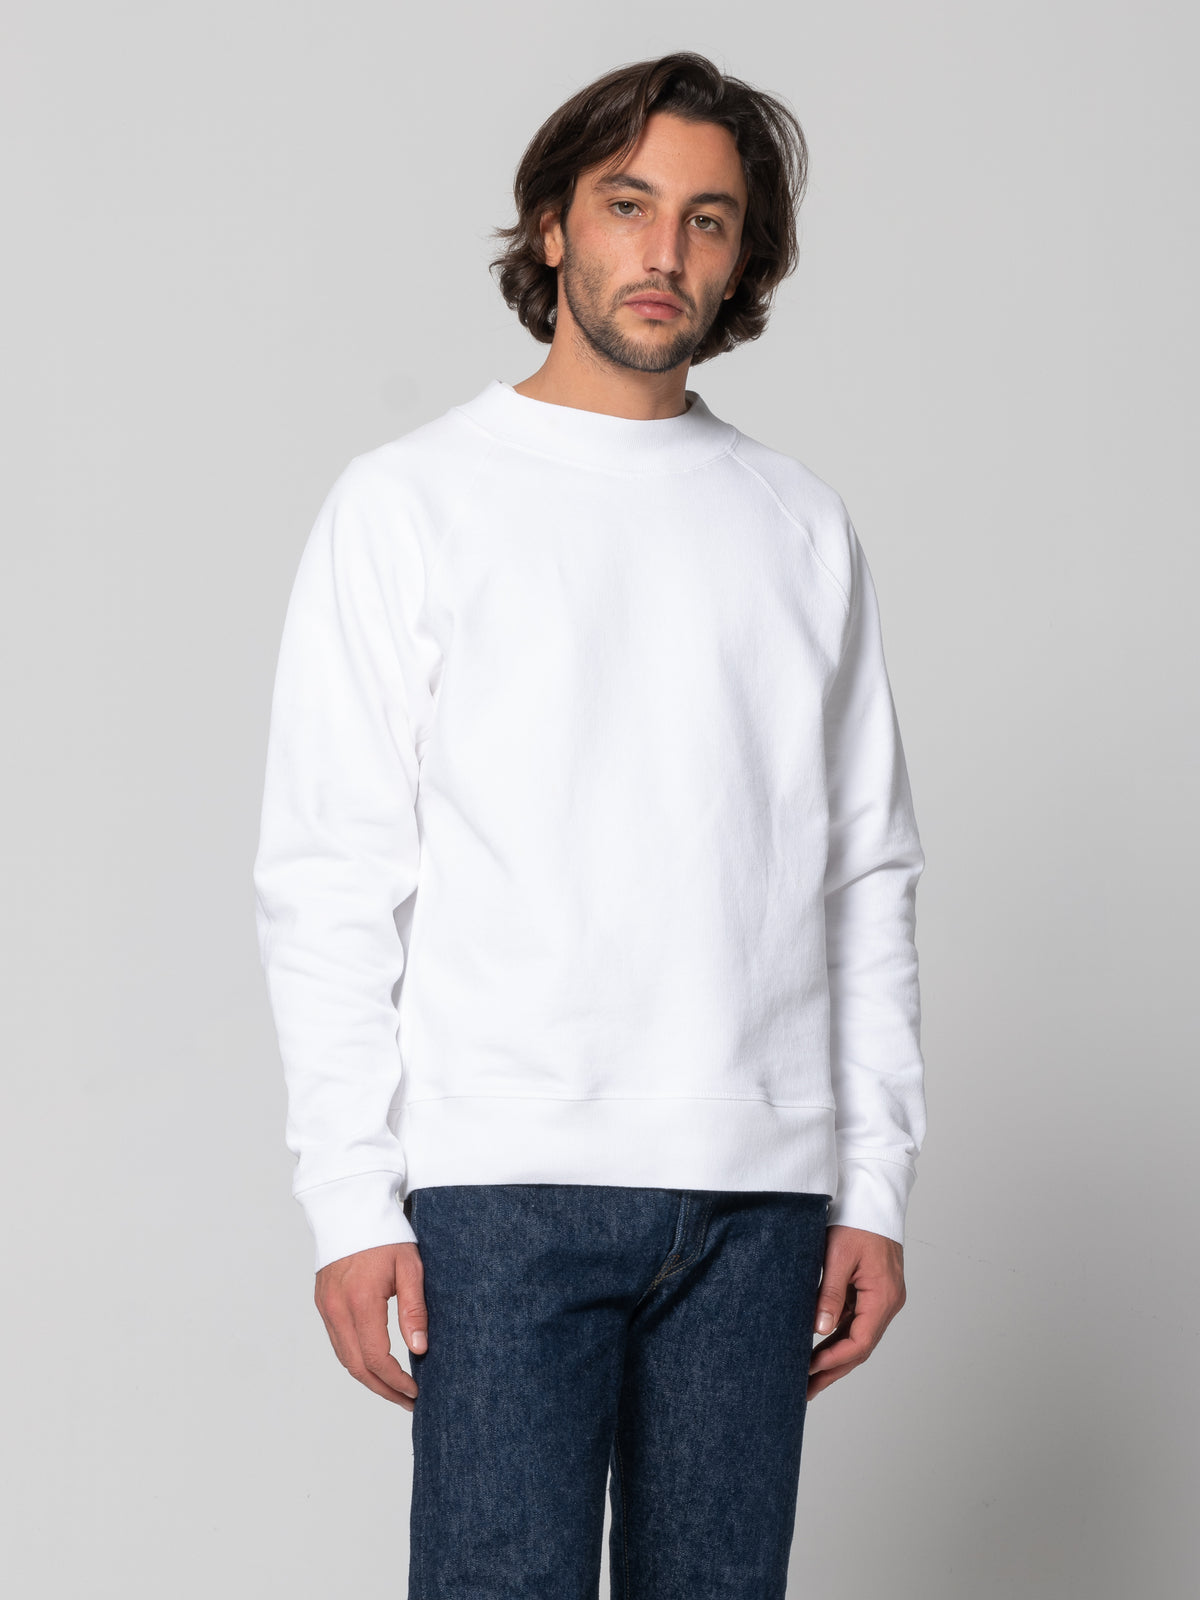 Sweatshirt en coton brut épais. Emmanchure raglan. Coupe ample.  Fabriqué au Portugal.  100% Coton.